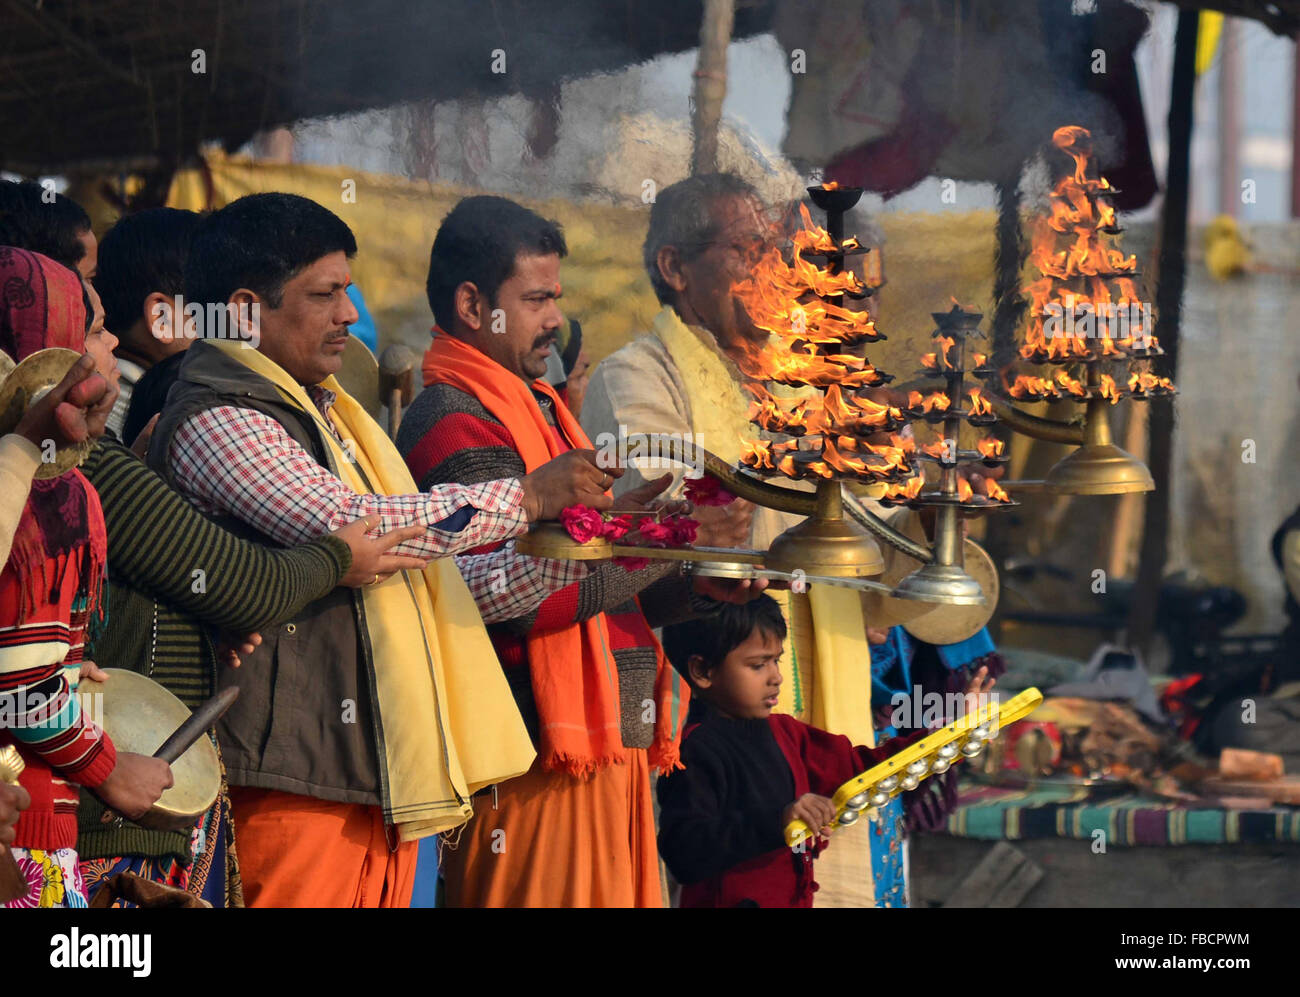 Allahabad, estado indio de Uttar Pradesh. 14 ene, 2016. Los devotos Hindu participar en una ceremonia religiosa cerca de la confluencia del río Ganges, Yamuna y Sarasvati en el primer baño auspicioso día del Ardh Kumbh Mela en Allahabad, norteño estado indio de Uttar Pradesh, el 14 de enero, 2016. Ardh Kumbh (mitad Kumbh Mela) es energía celebró seis años después de Haridwar Kumbh Mela, que se celebra cada 12 años. Miles de devotos se espera al baño en el río Indio santo absueltos de sus pecados. © Stringer/Xinhua/Alamy Live News Foto de stock